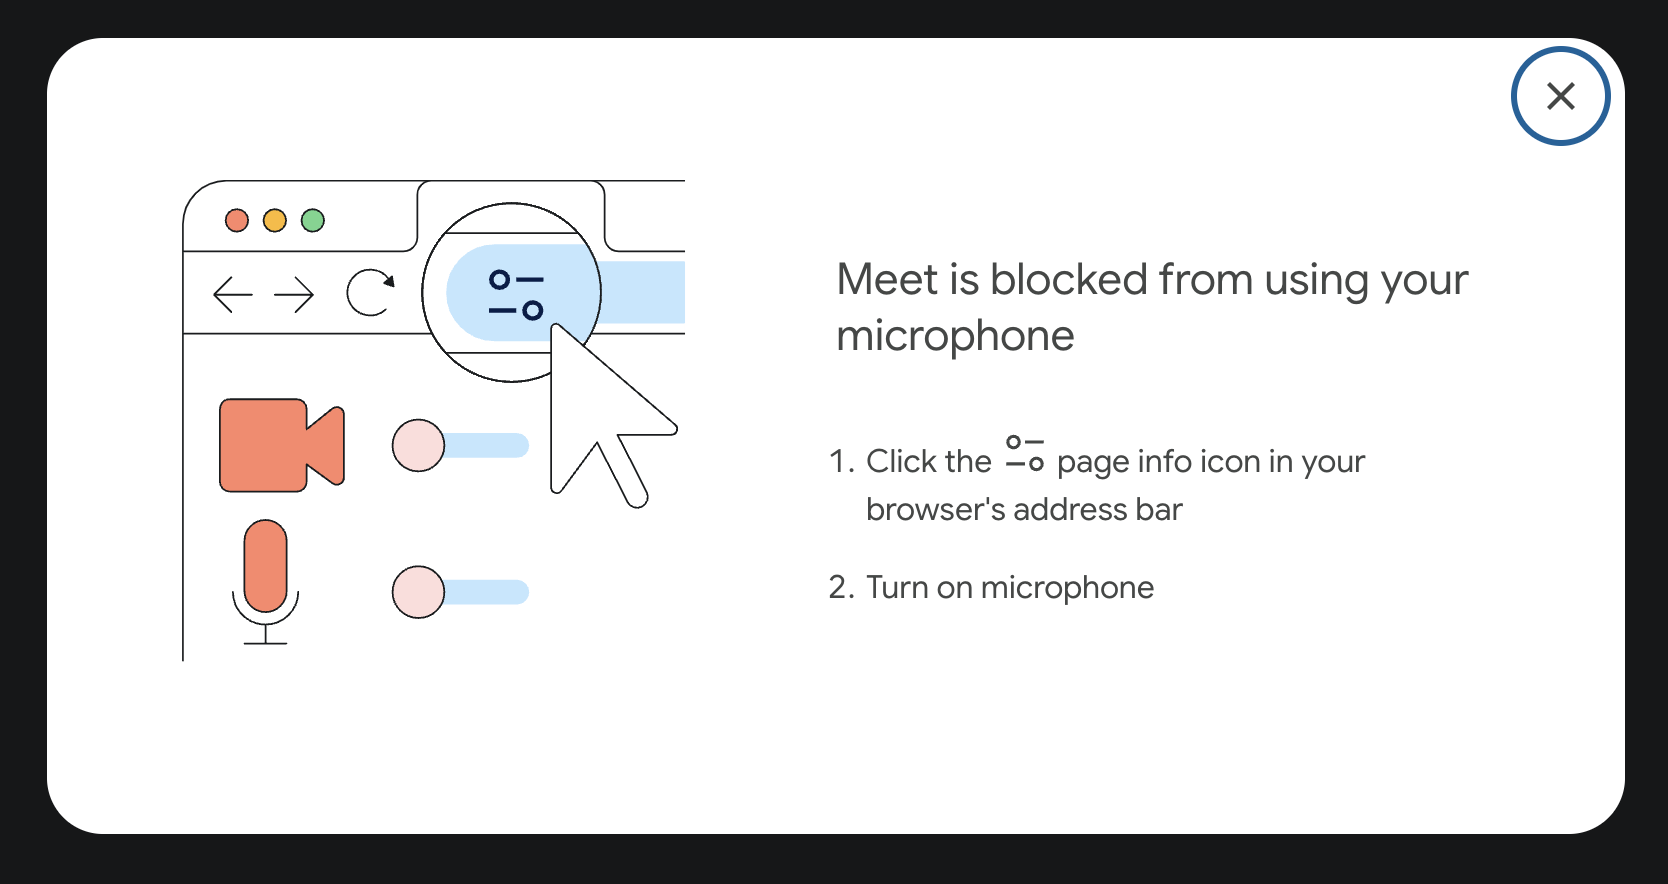 วิธีการของ Google Meet เกี่ยวกับวิธีเปิดตัวควบคุมเว็บไซต์ Chrome